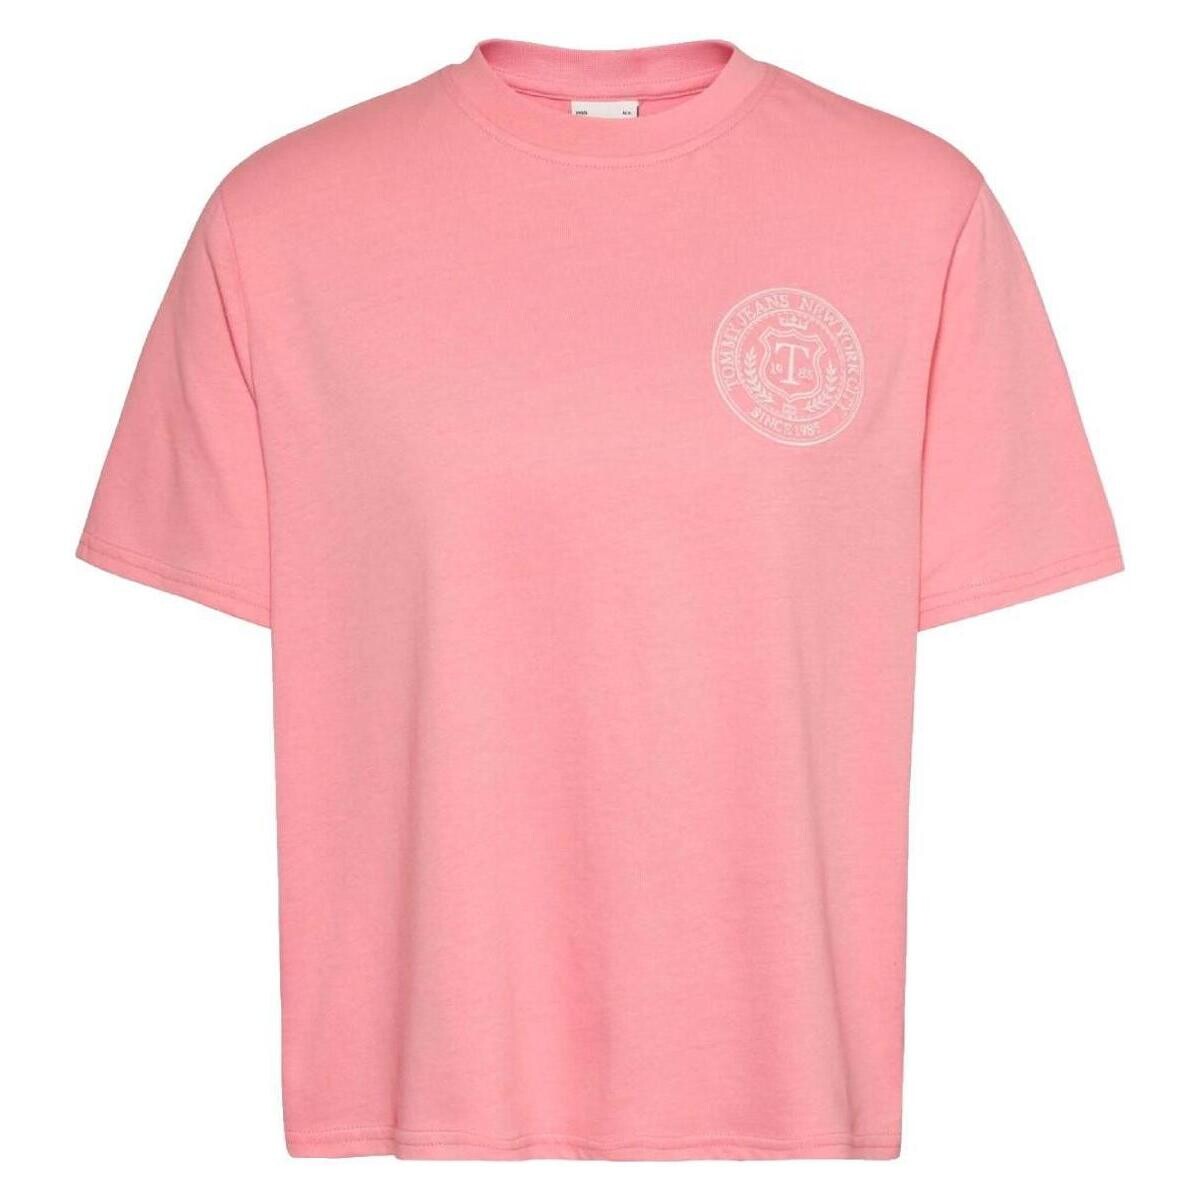 Υφασμάτινα Γυναίκα T-shirt με κοντά μανίκια Tommy Hilfiger  Ροζ